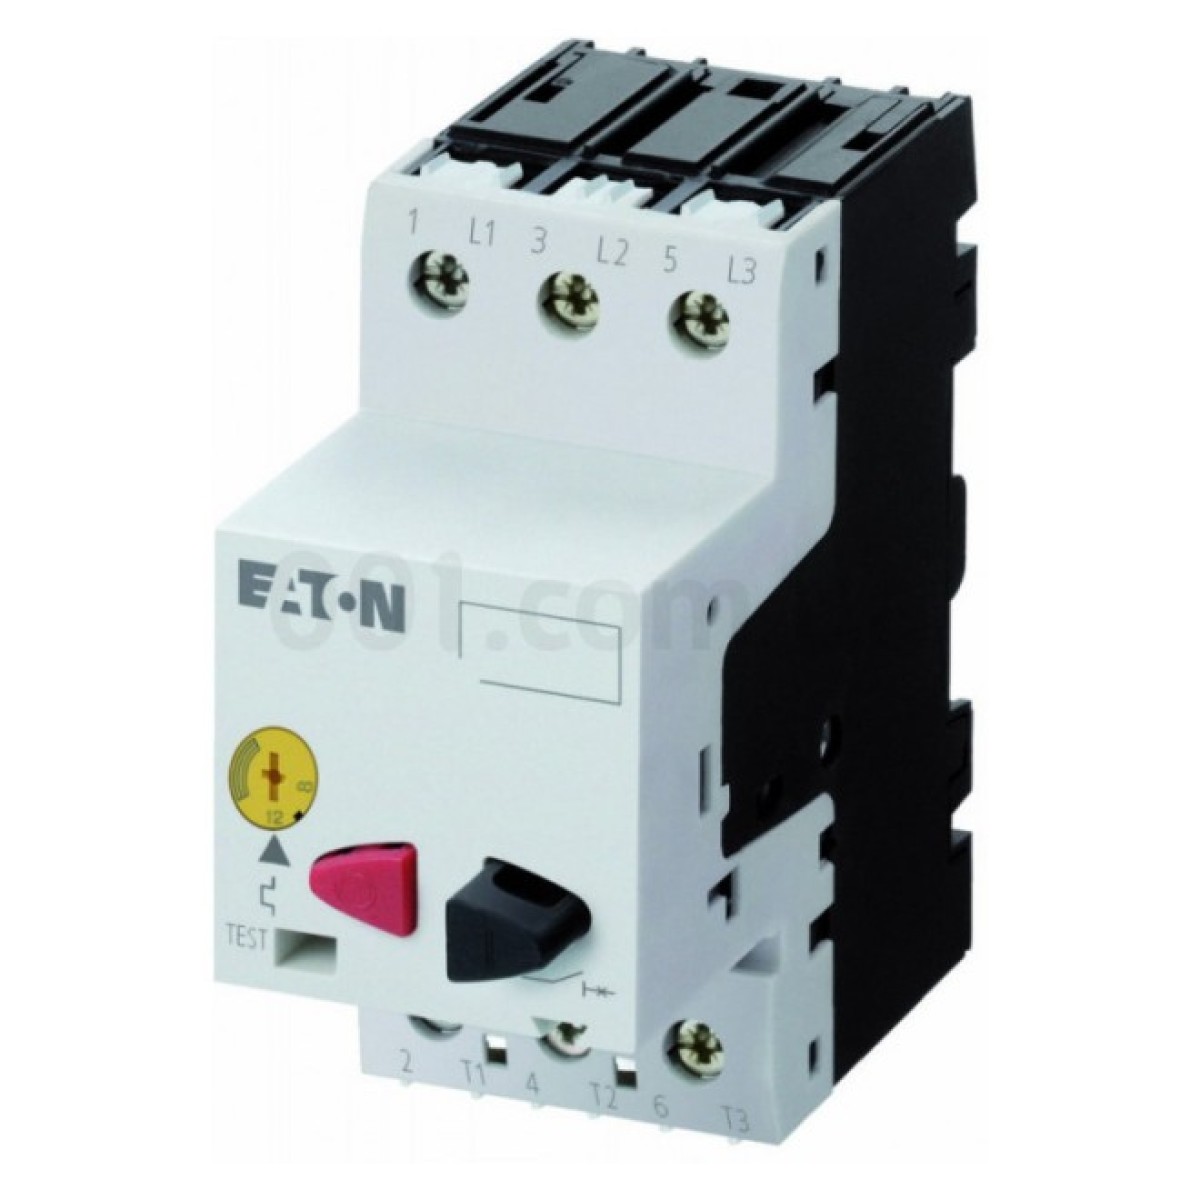 Автоматический выключатель защиты двигателя PKZM01-1,6 Ir=1...1,6А, Eaton (Moeller) 256_256.jpg